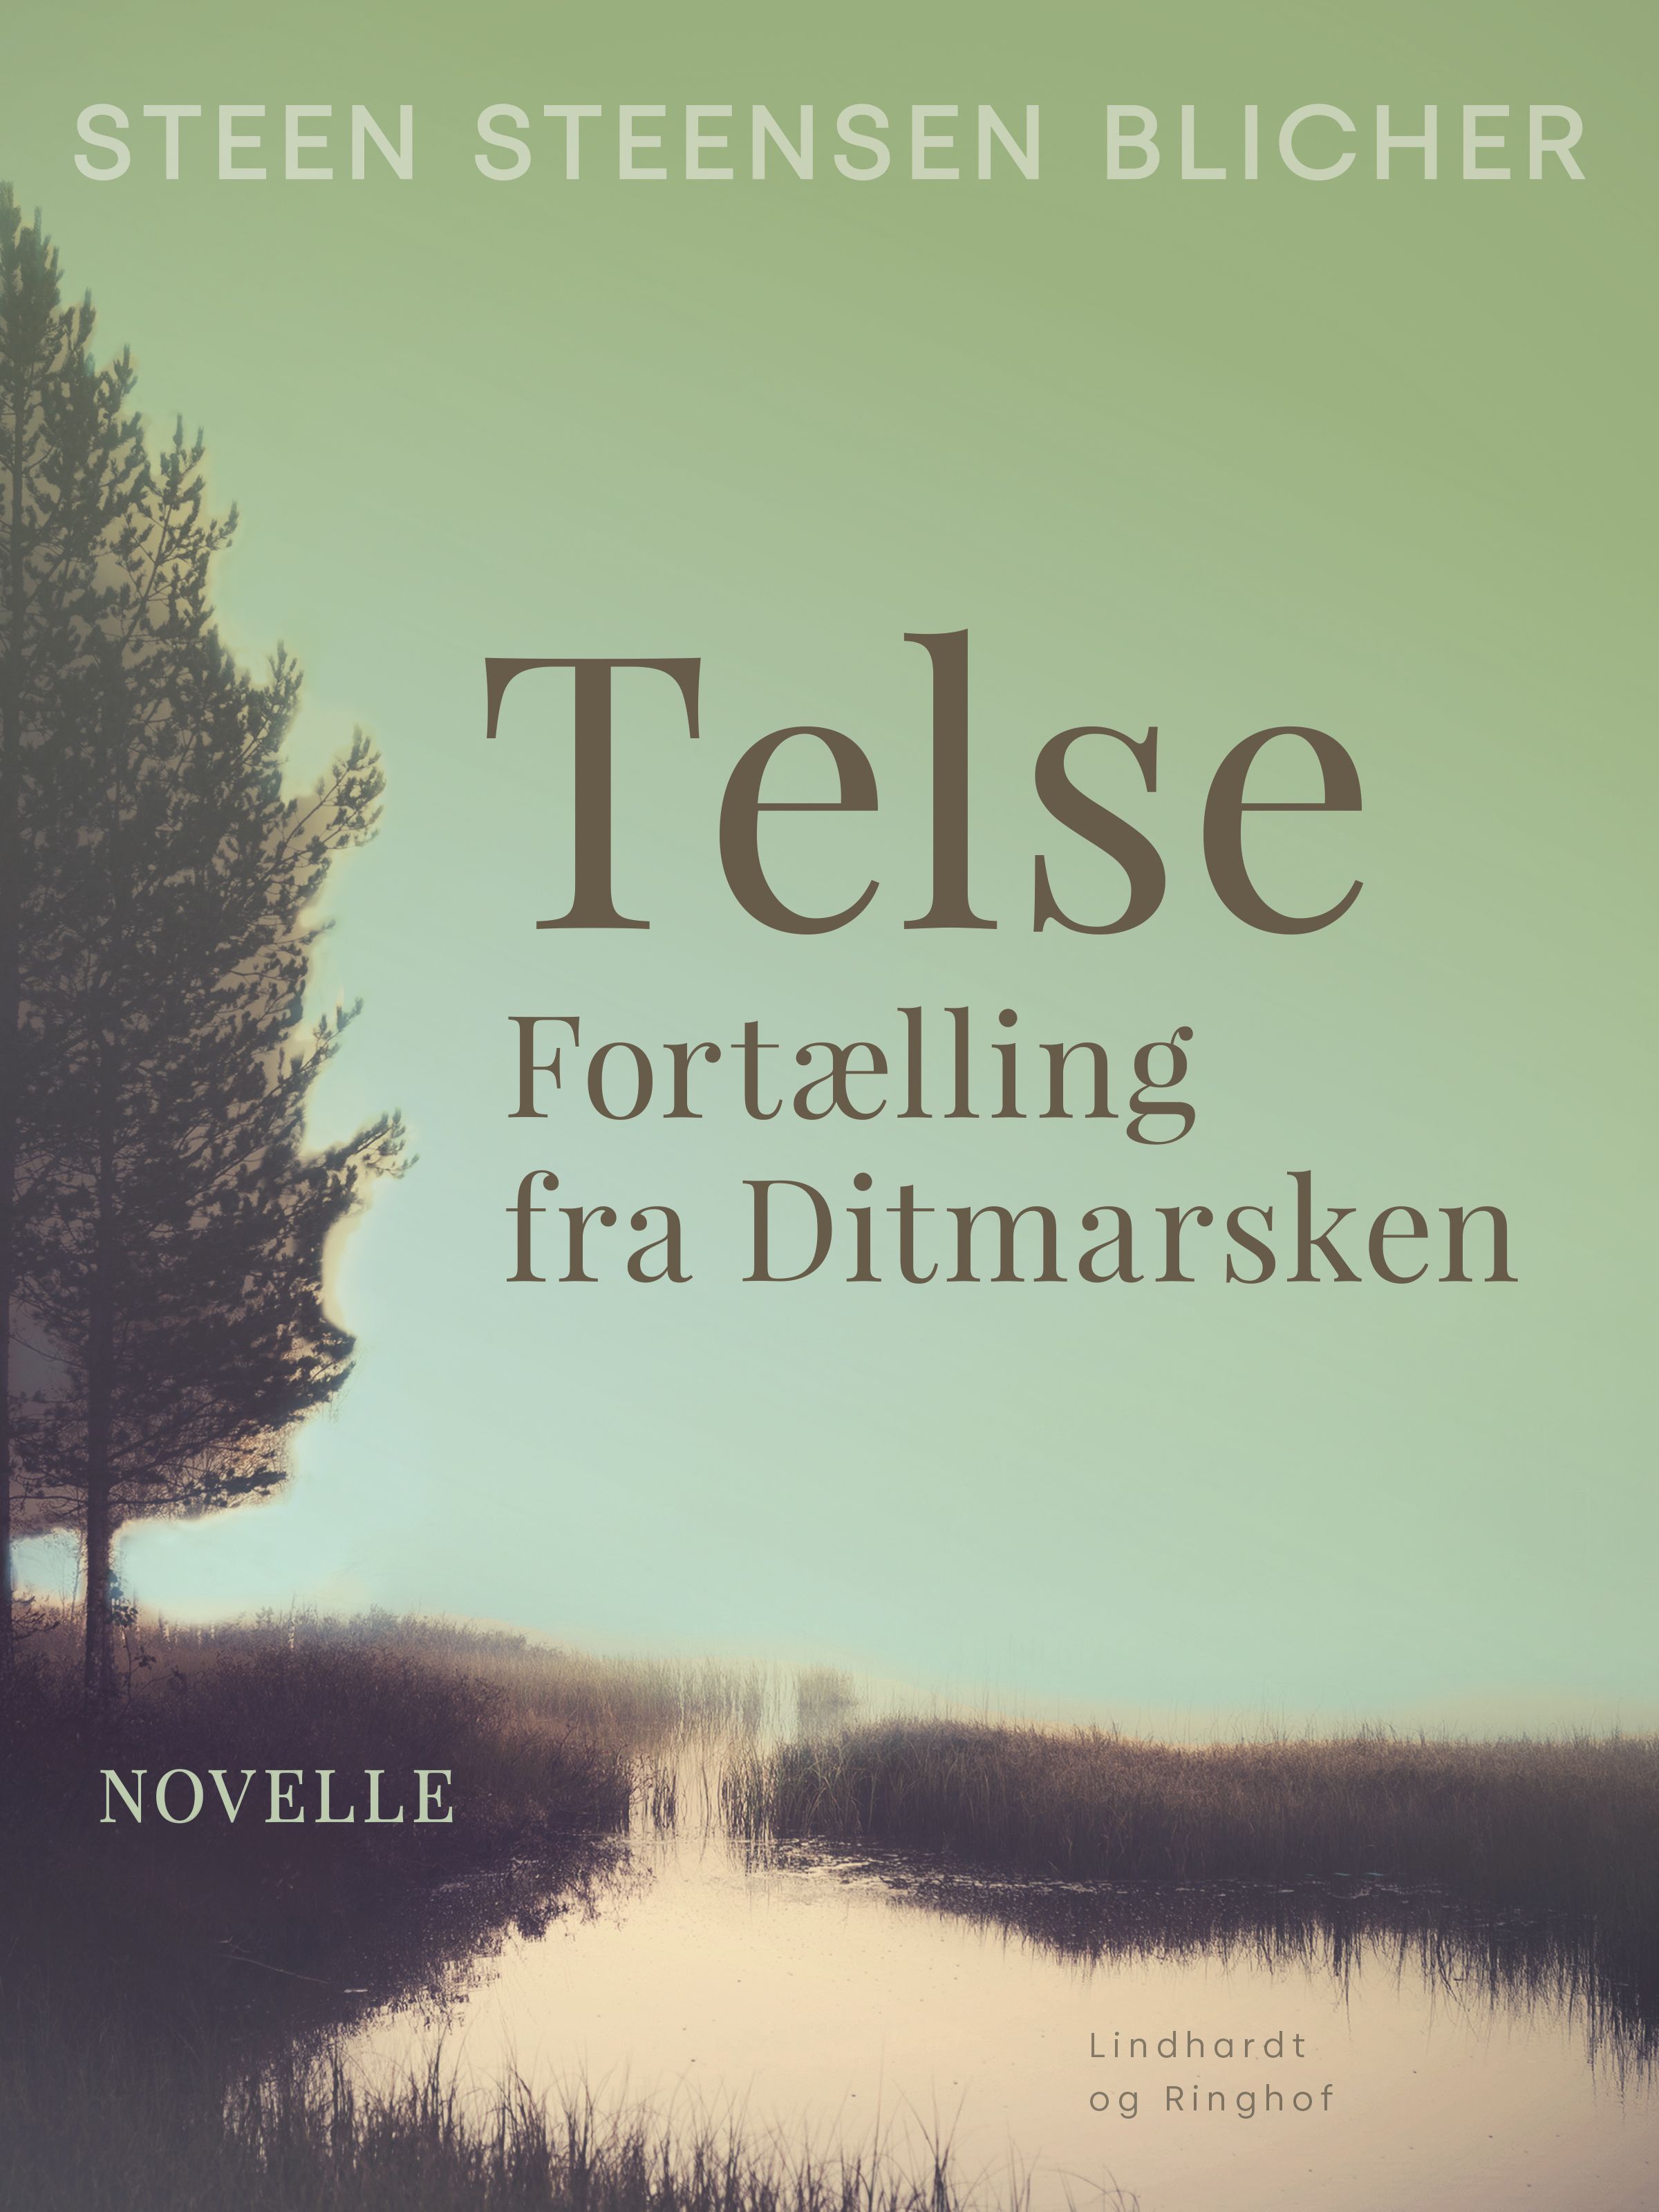 Telse. Fortælling fra Ditmarsken, e-bog af Steen Steensen Blicher